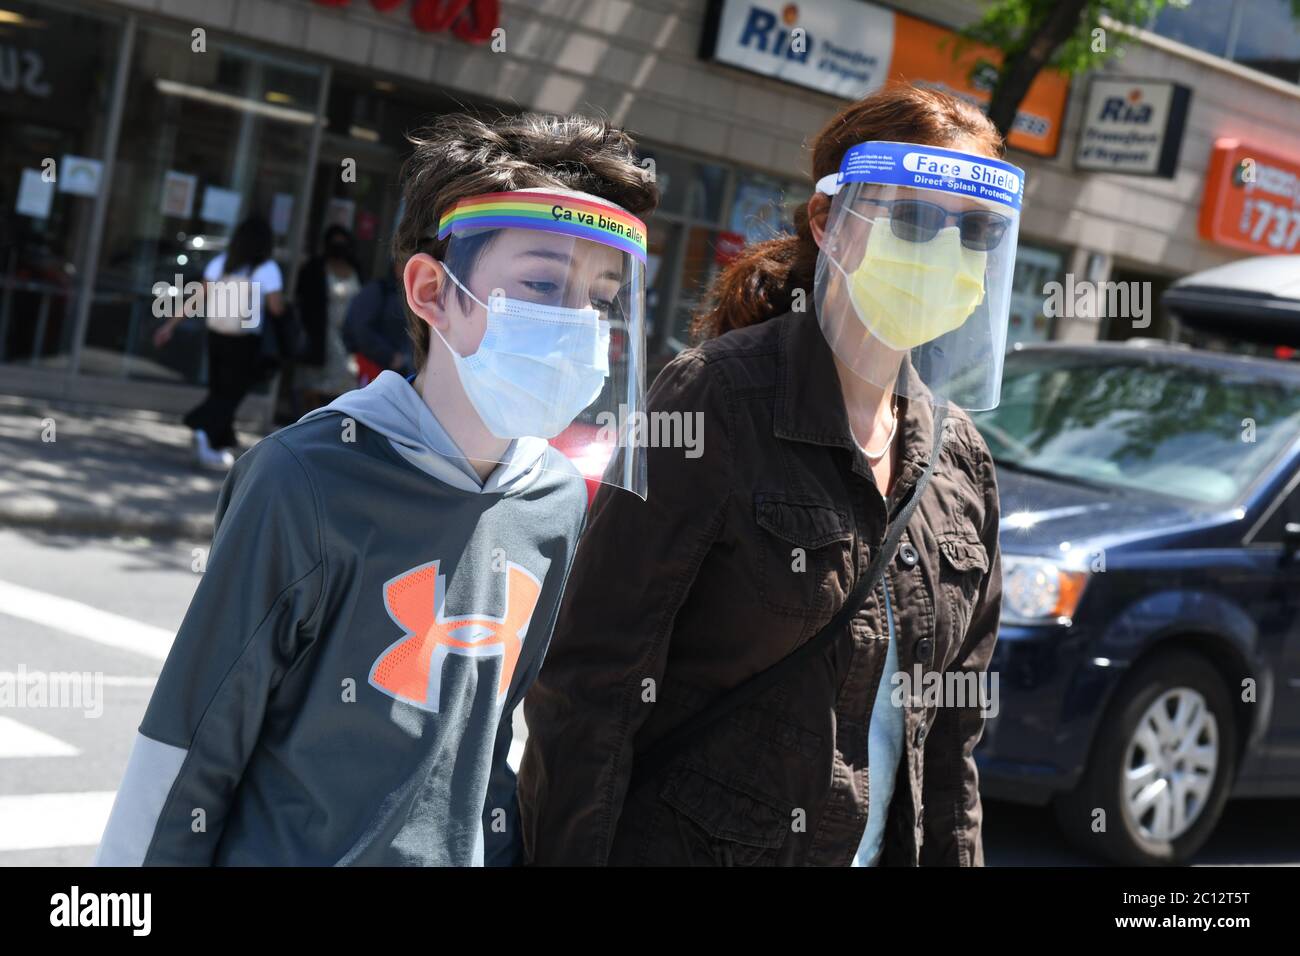 Mère et fils portant des masques protecteurs et des écrans faciaux pendant la pandémie Covid-19 à Montréal Canada (modèle mis en circulation) Banque D'Images